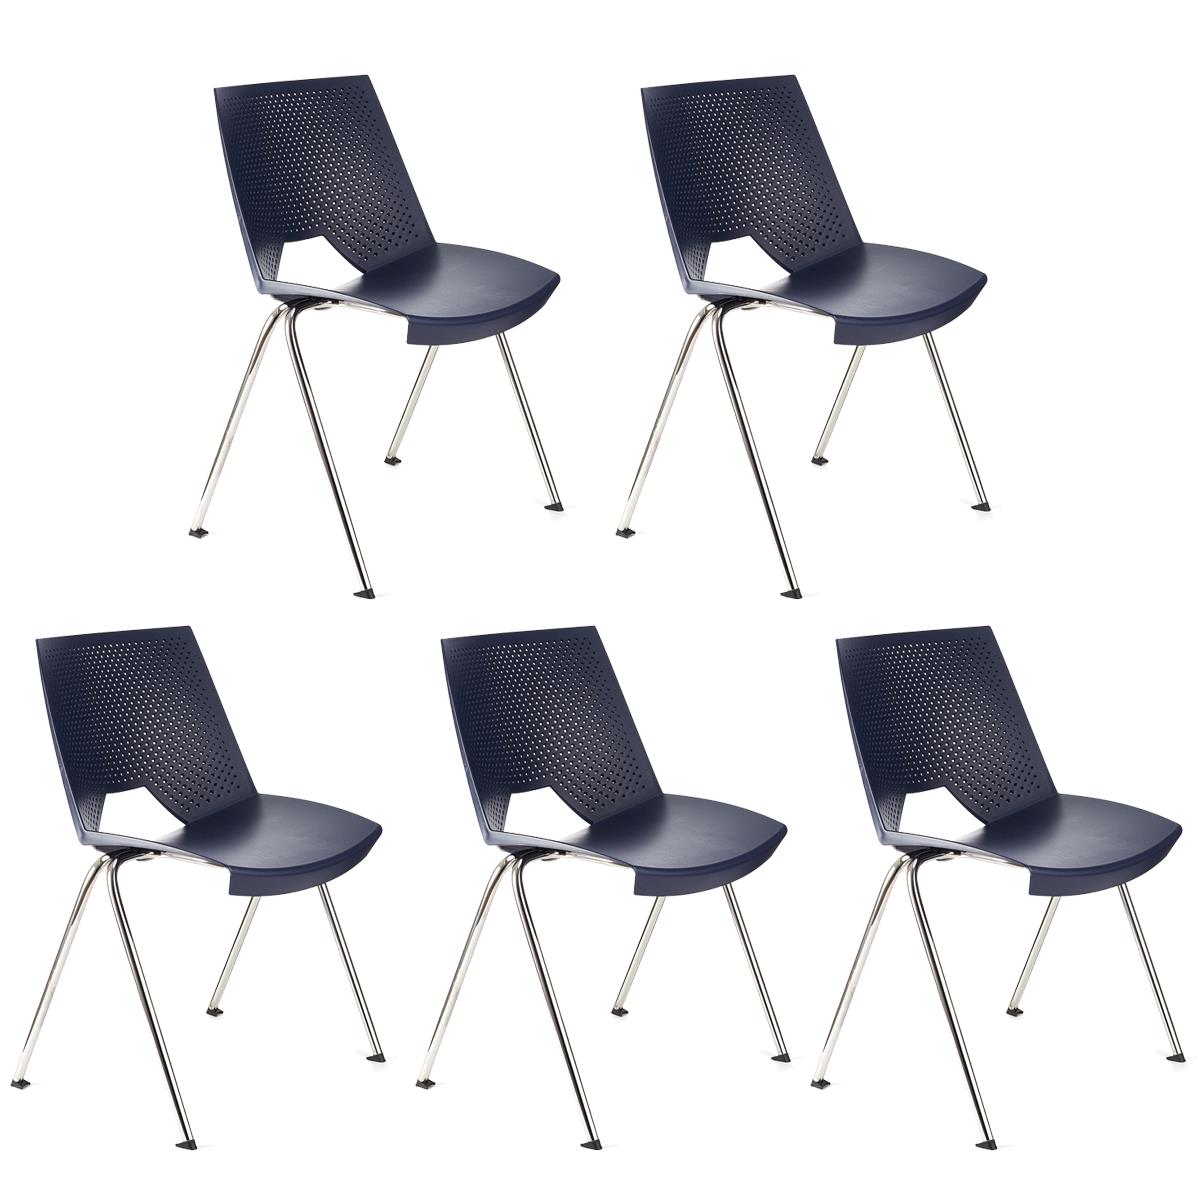 Lote 5 Cadeiras de Visita ENZO, Confortável e Prática, Empilhável, Cor Azul